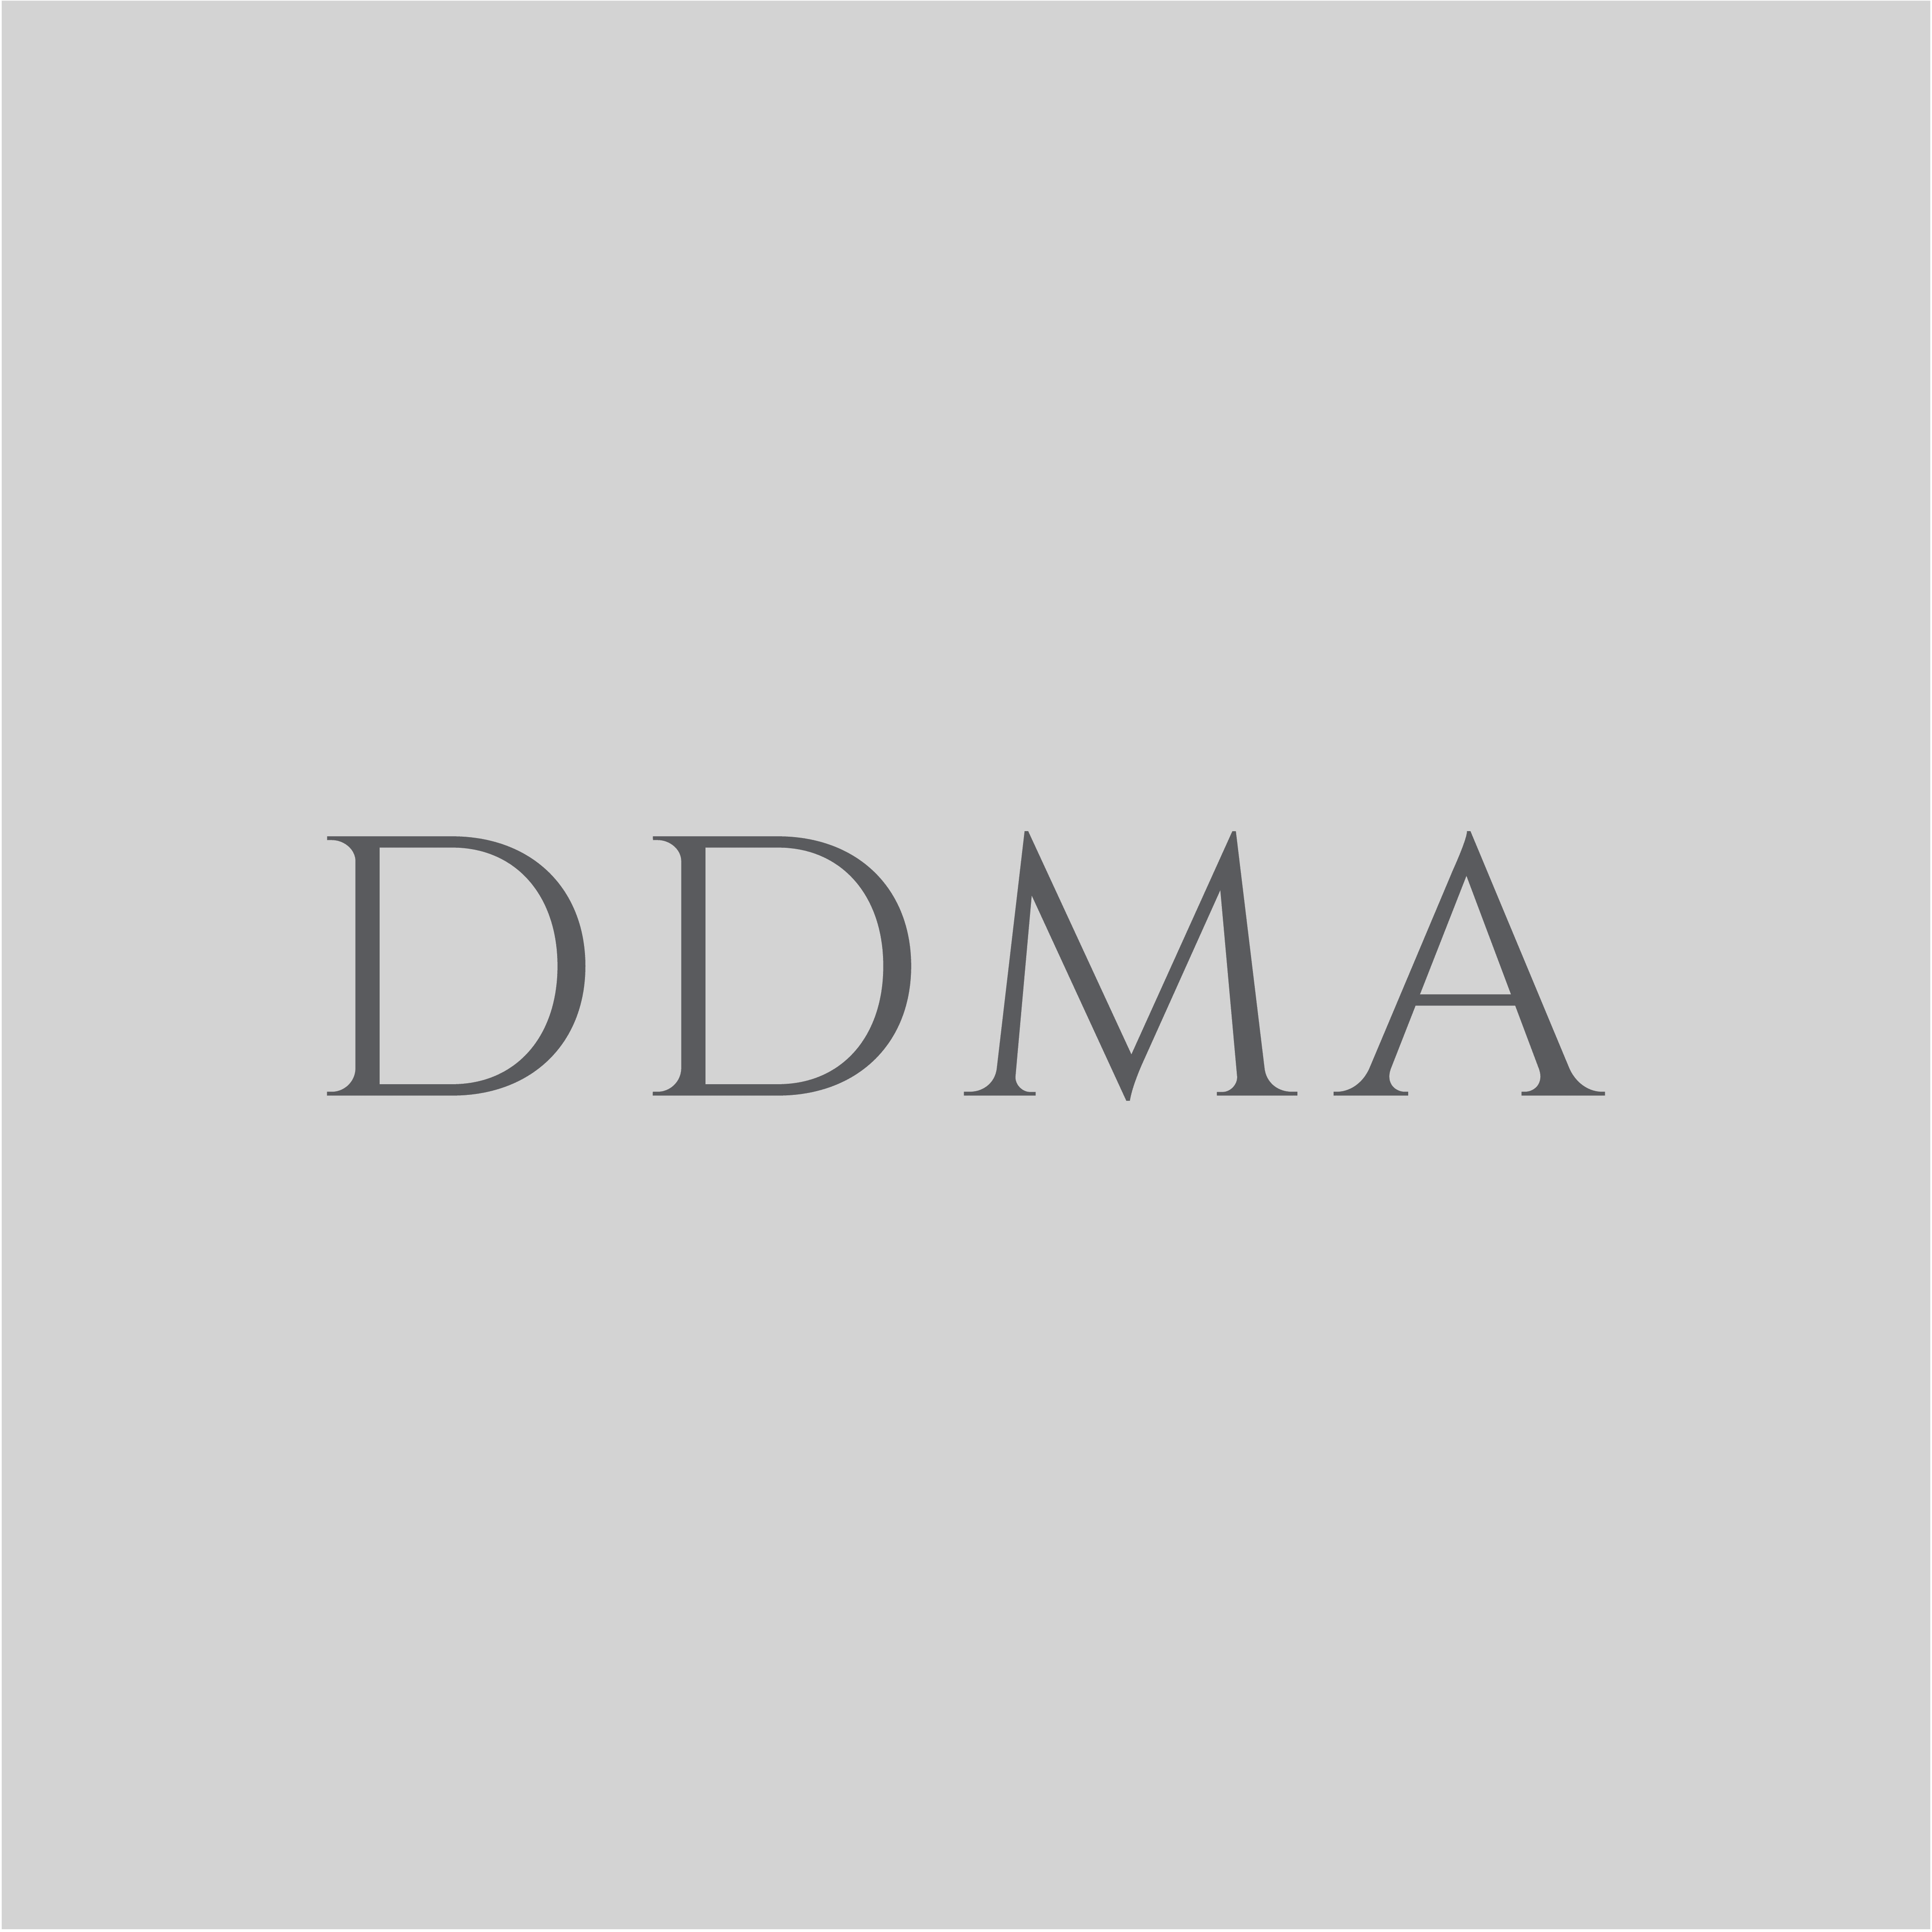 DDMA Faded Logo